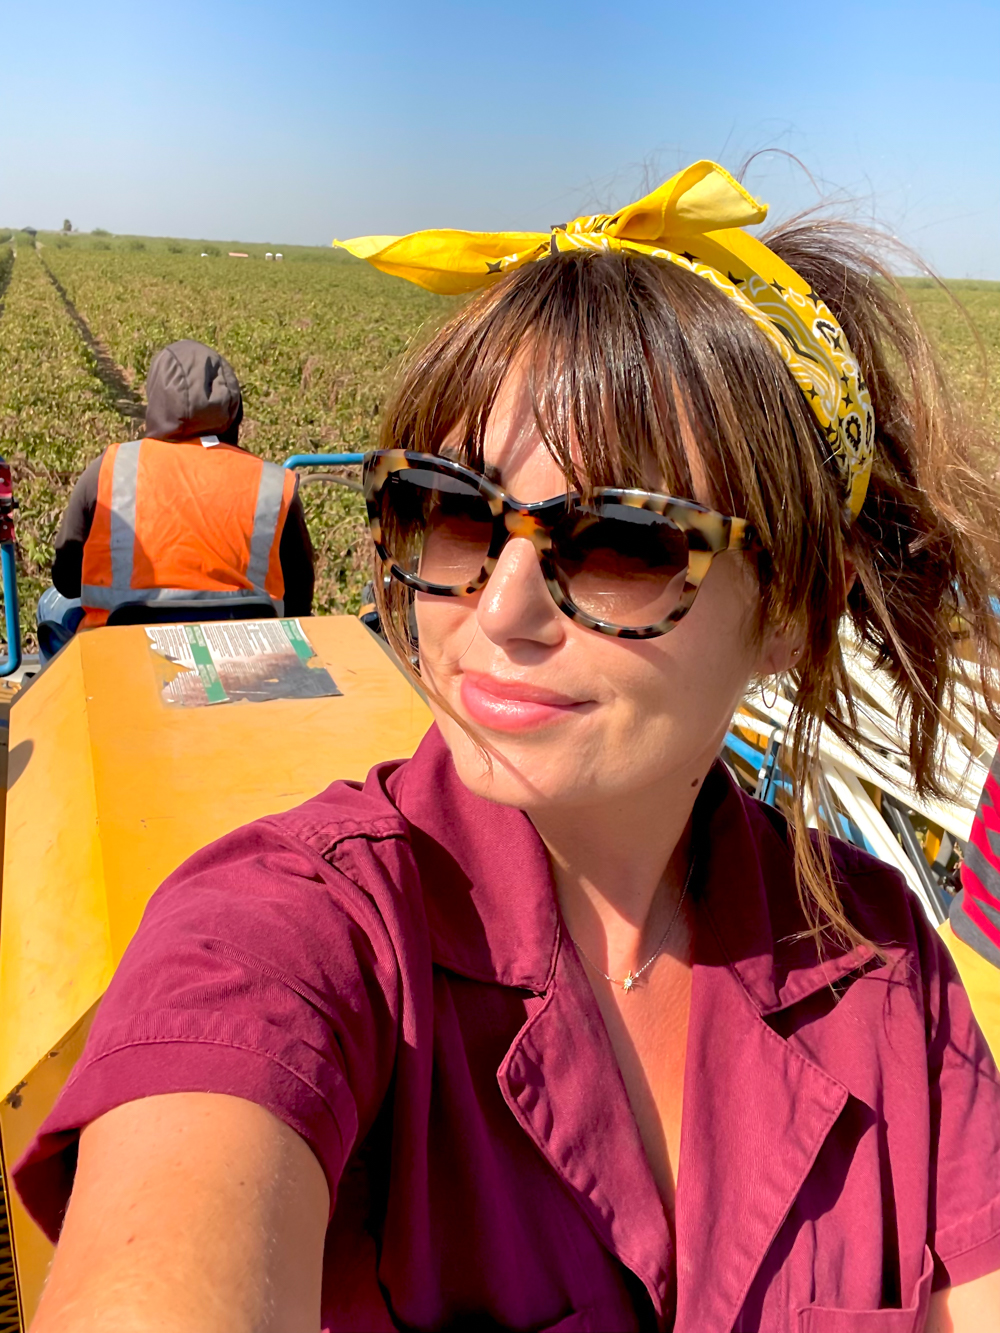 Riding a Raisin Harvester in Madera, CA